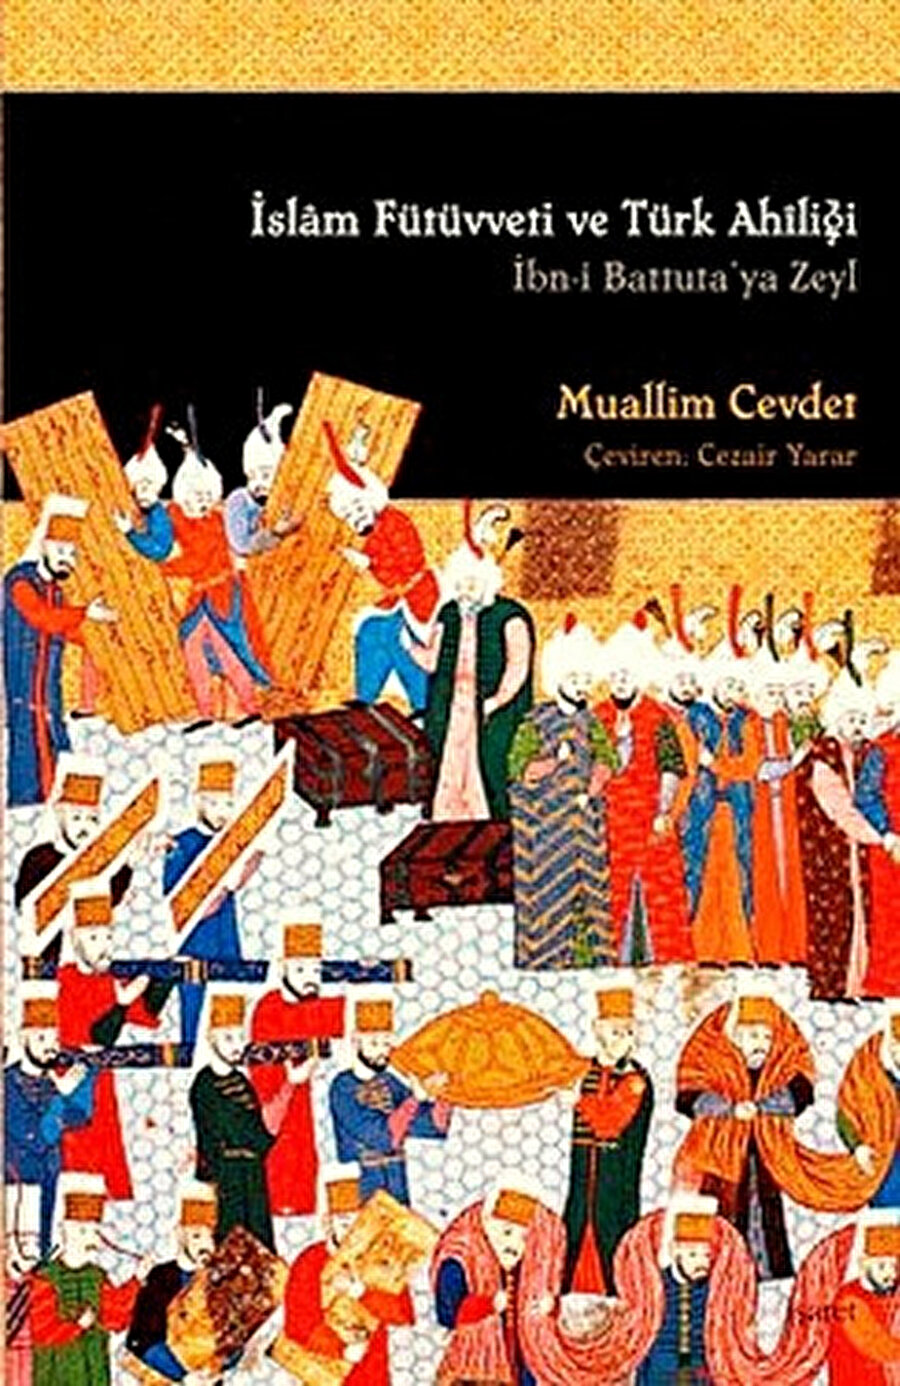 Muallim Cevdet'in İslam Fütüvveti ve Türk Ahiliği kitabı